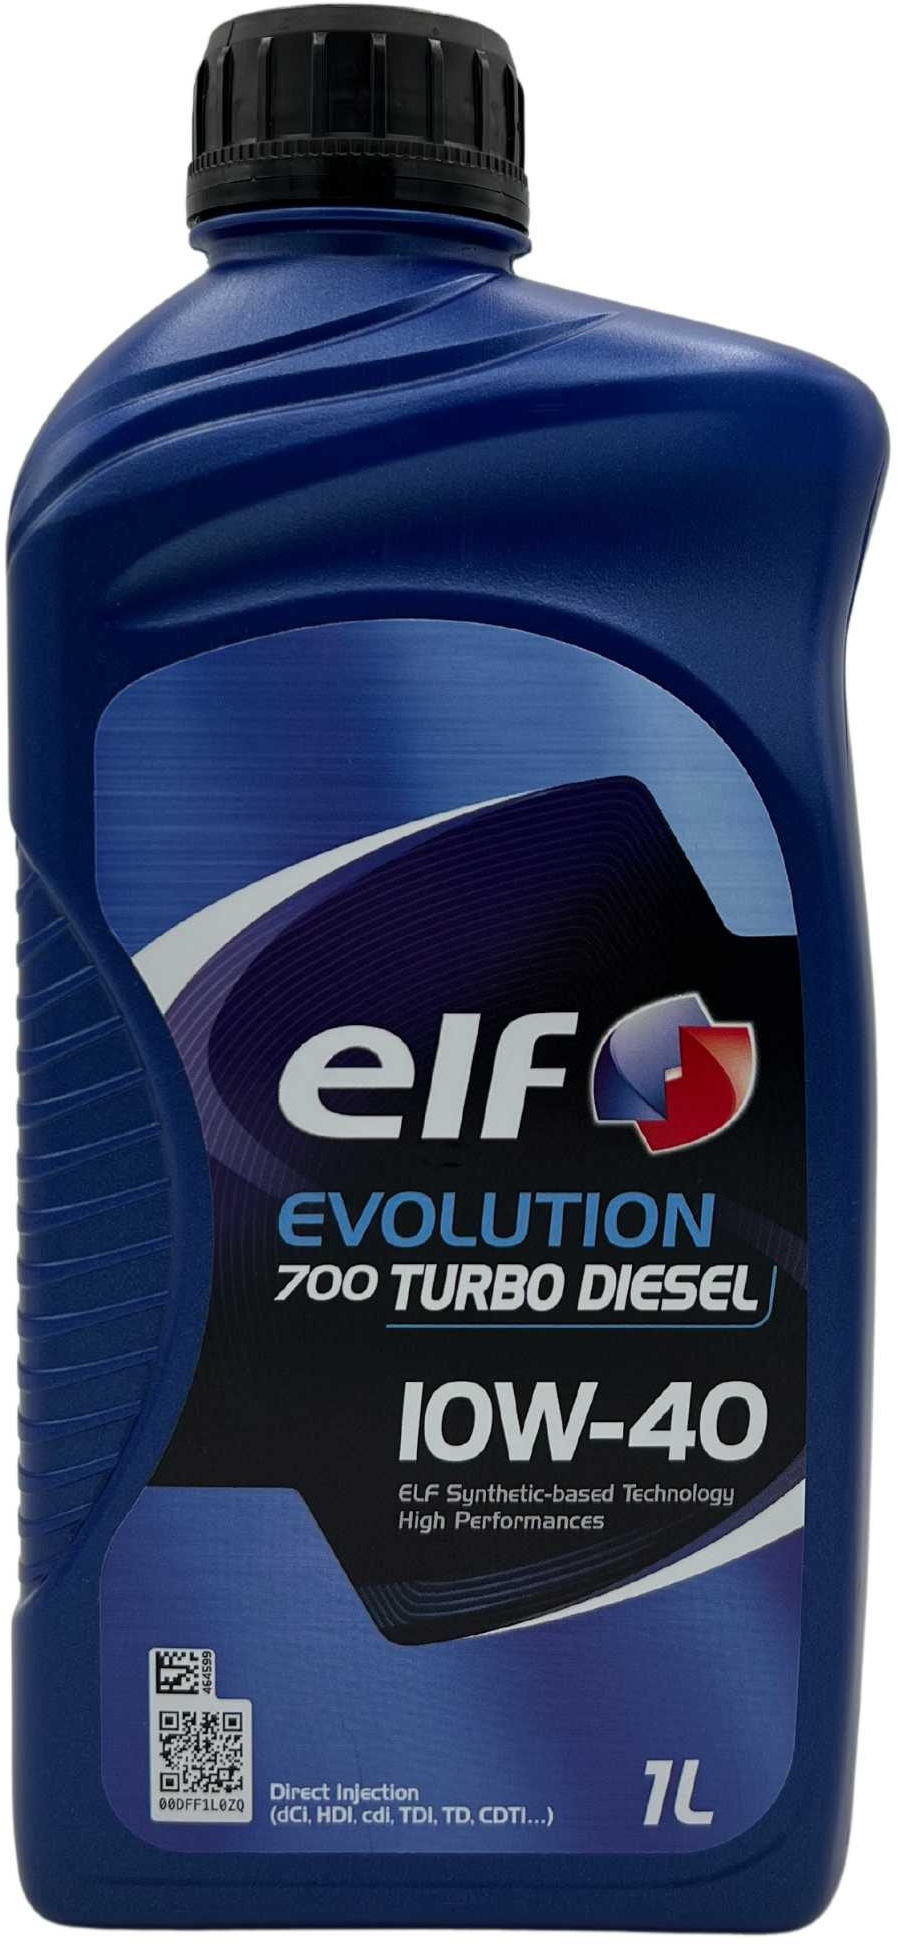 Elf Evolution 700 Turbo Diesel 10W-40 1 Liter